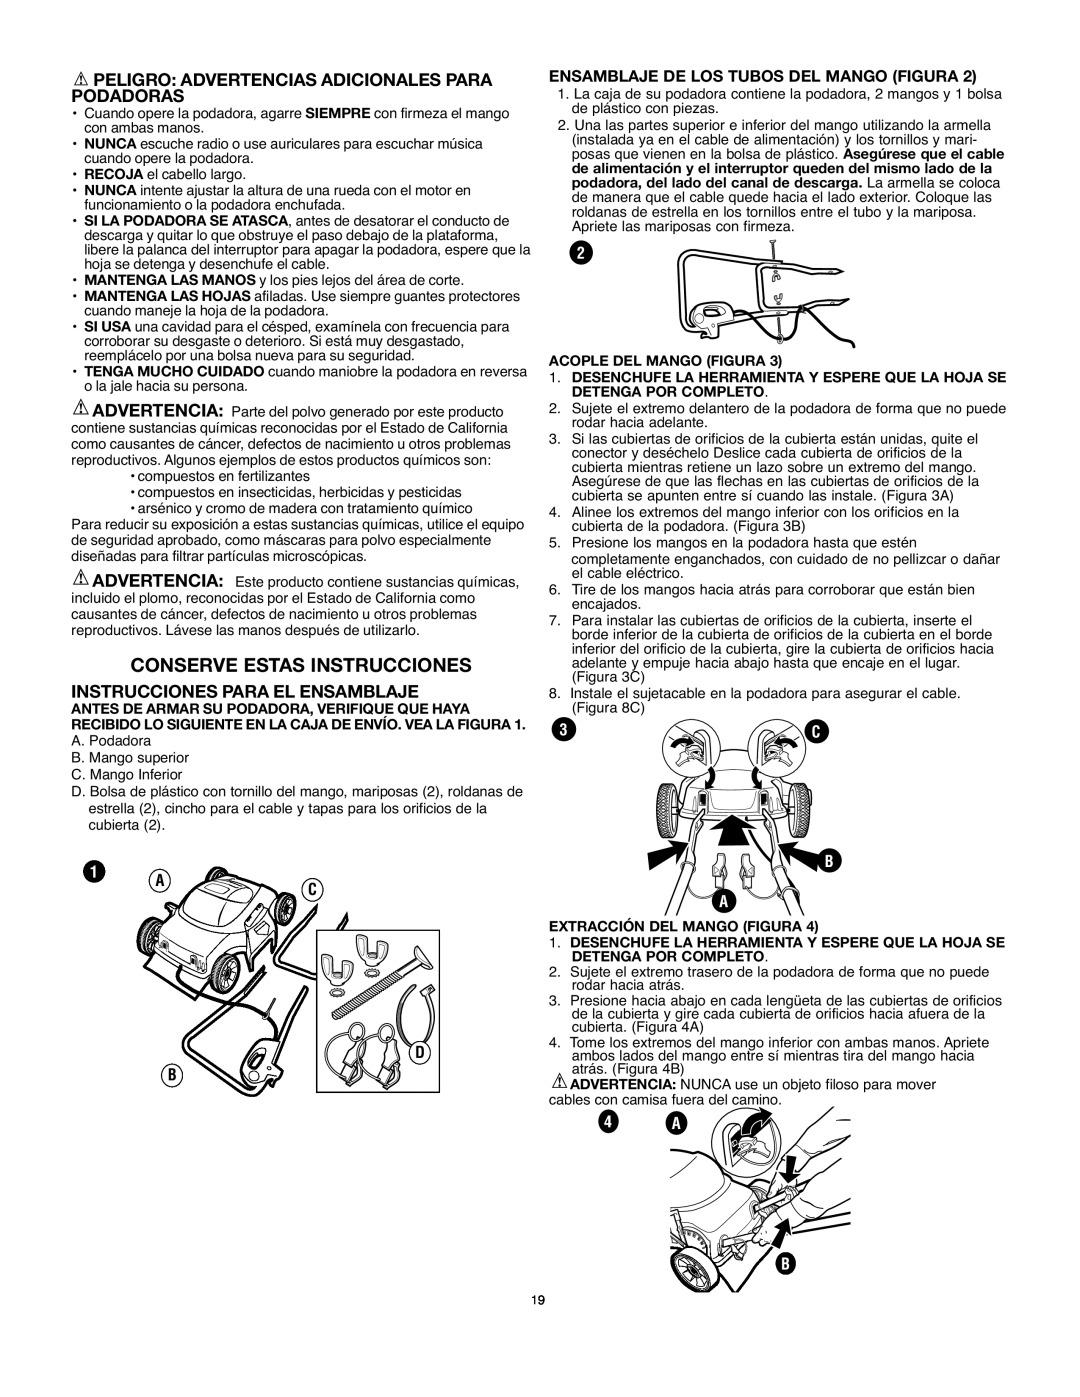 Black & Decker LM175 Conserve Estas Instrucciones, Peligro Advertencias Adicionales Para Podadoras, 4 A B 